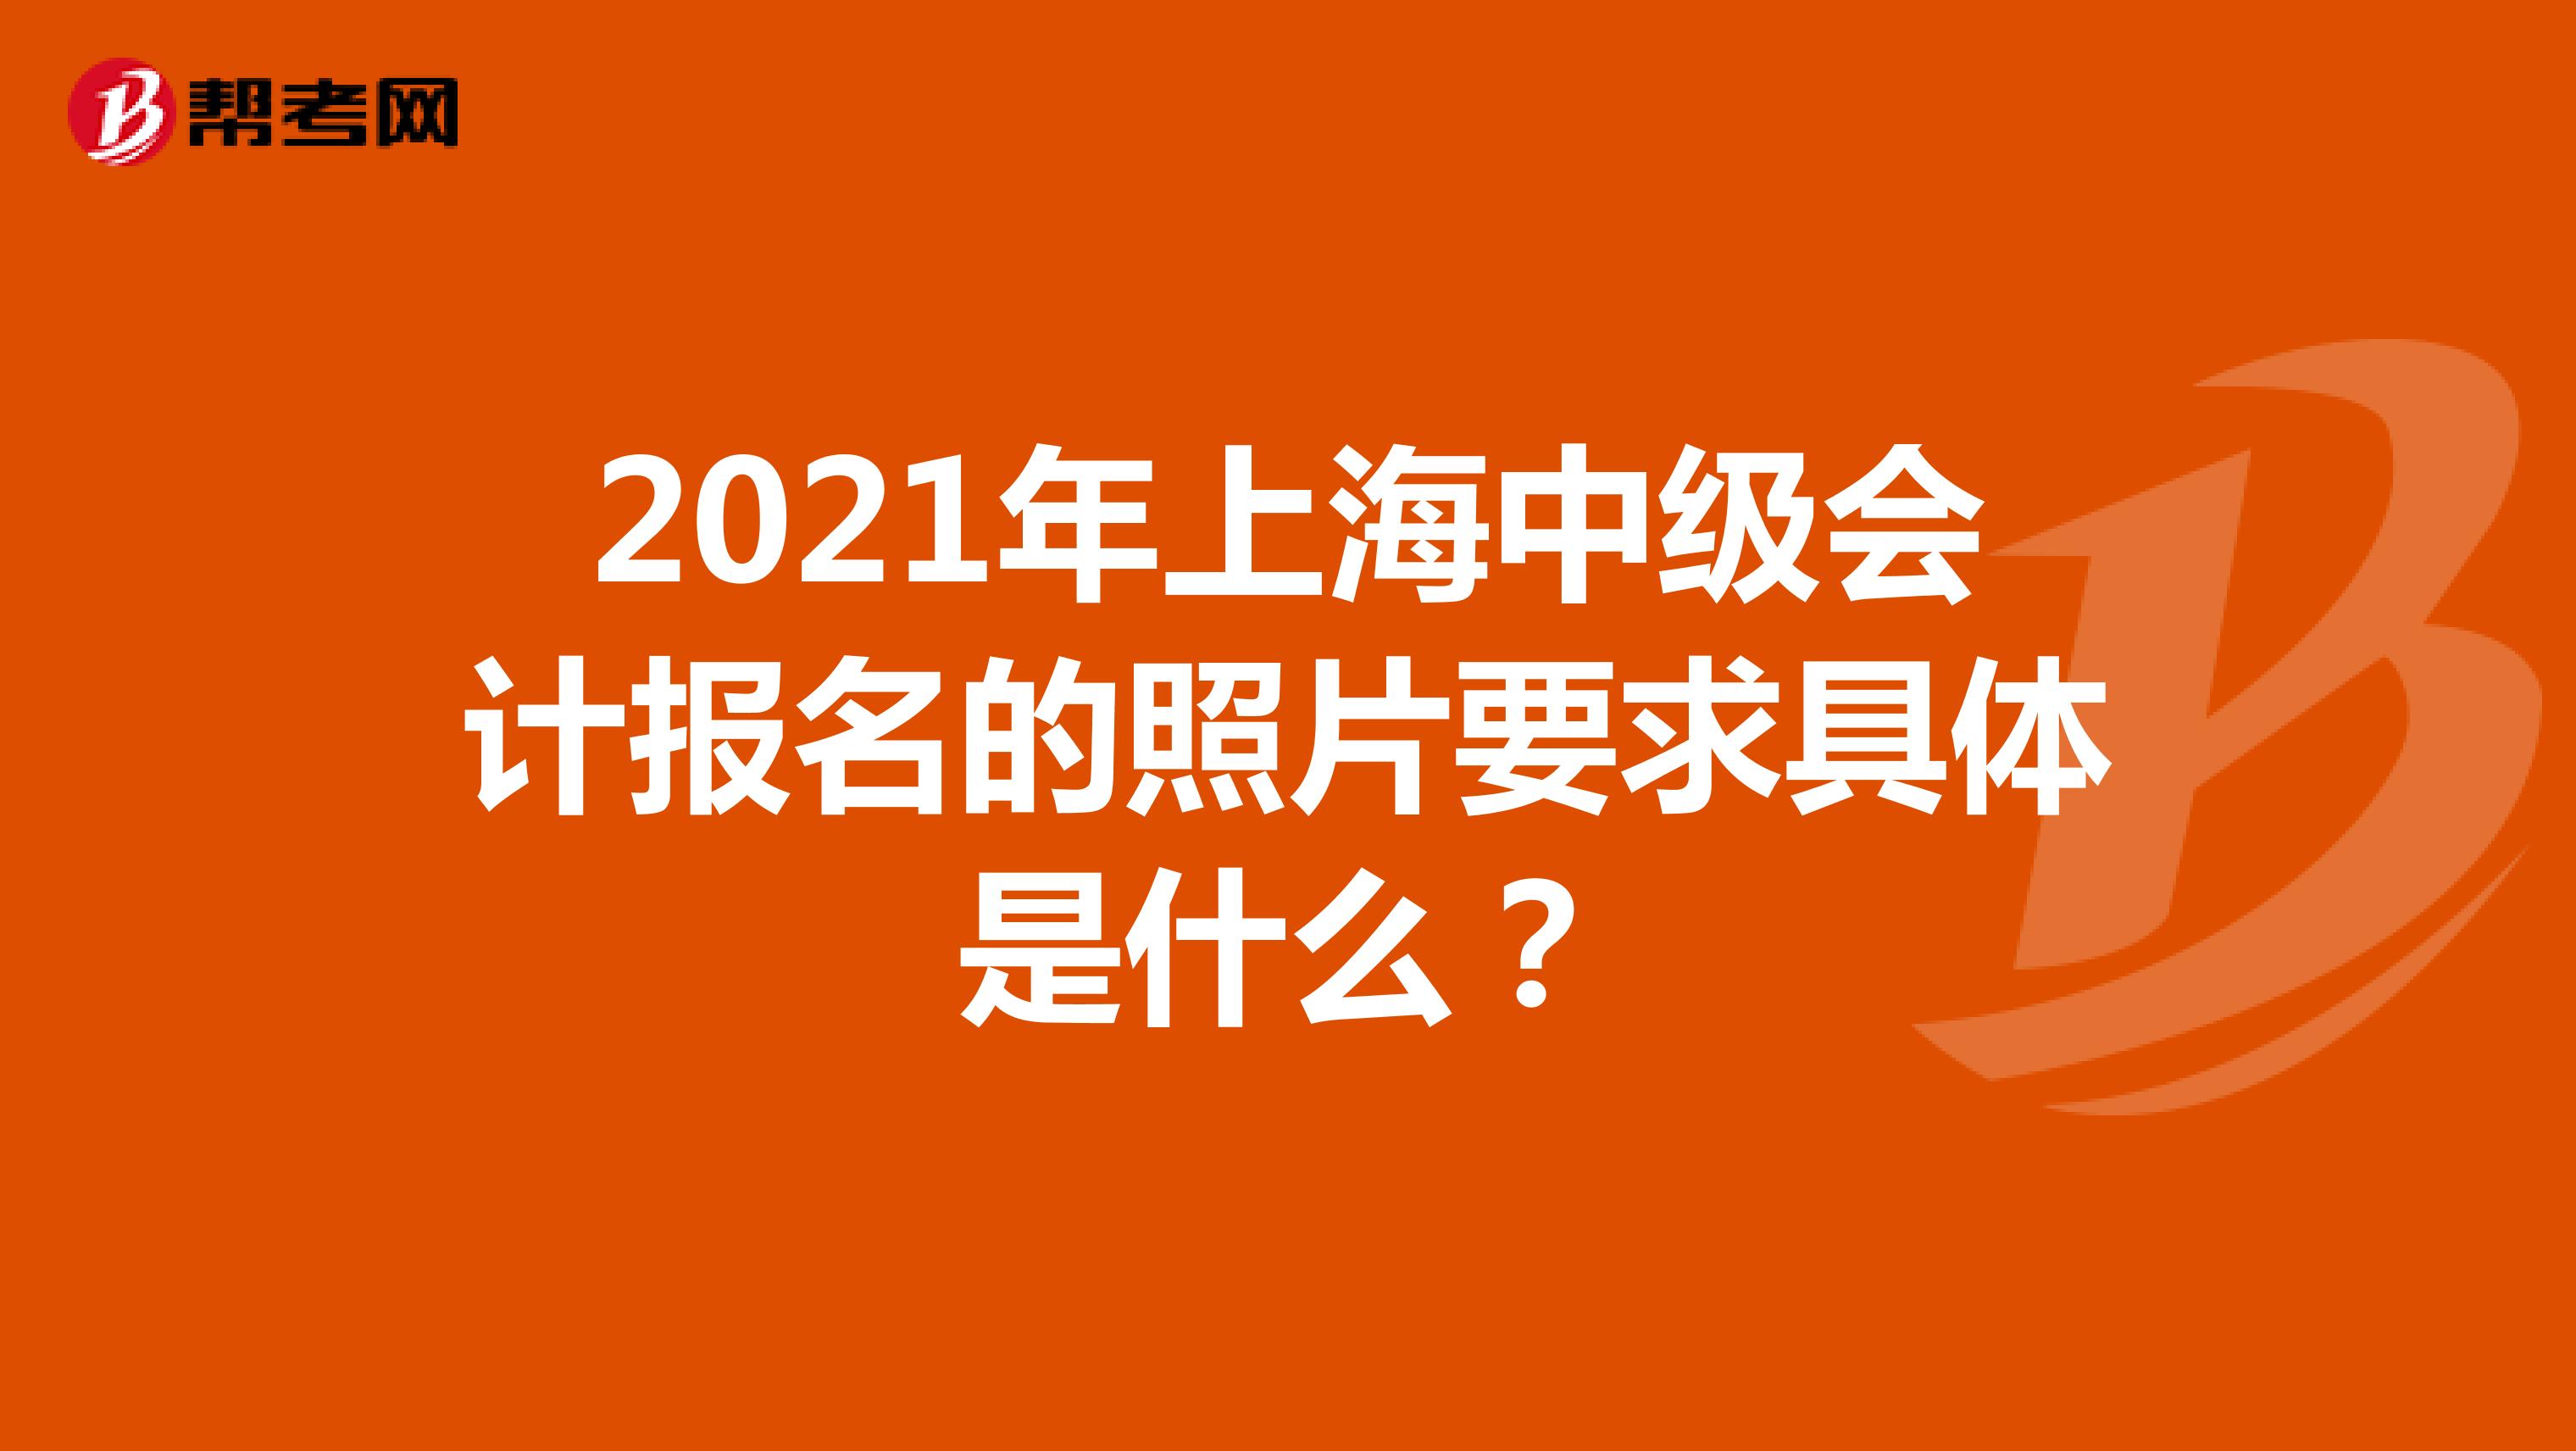 2021年上海中级会计报名的照片要求具体是什么？